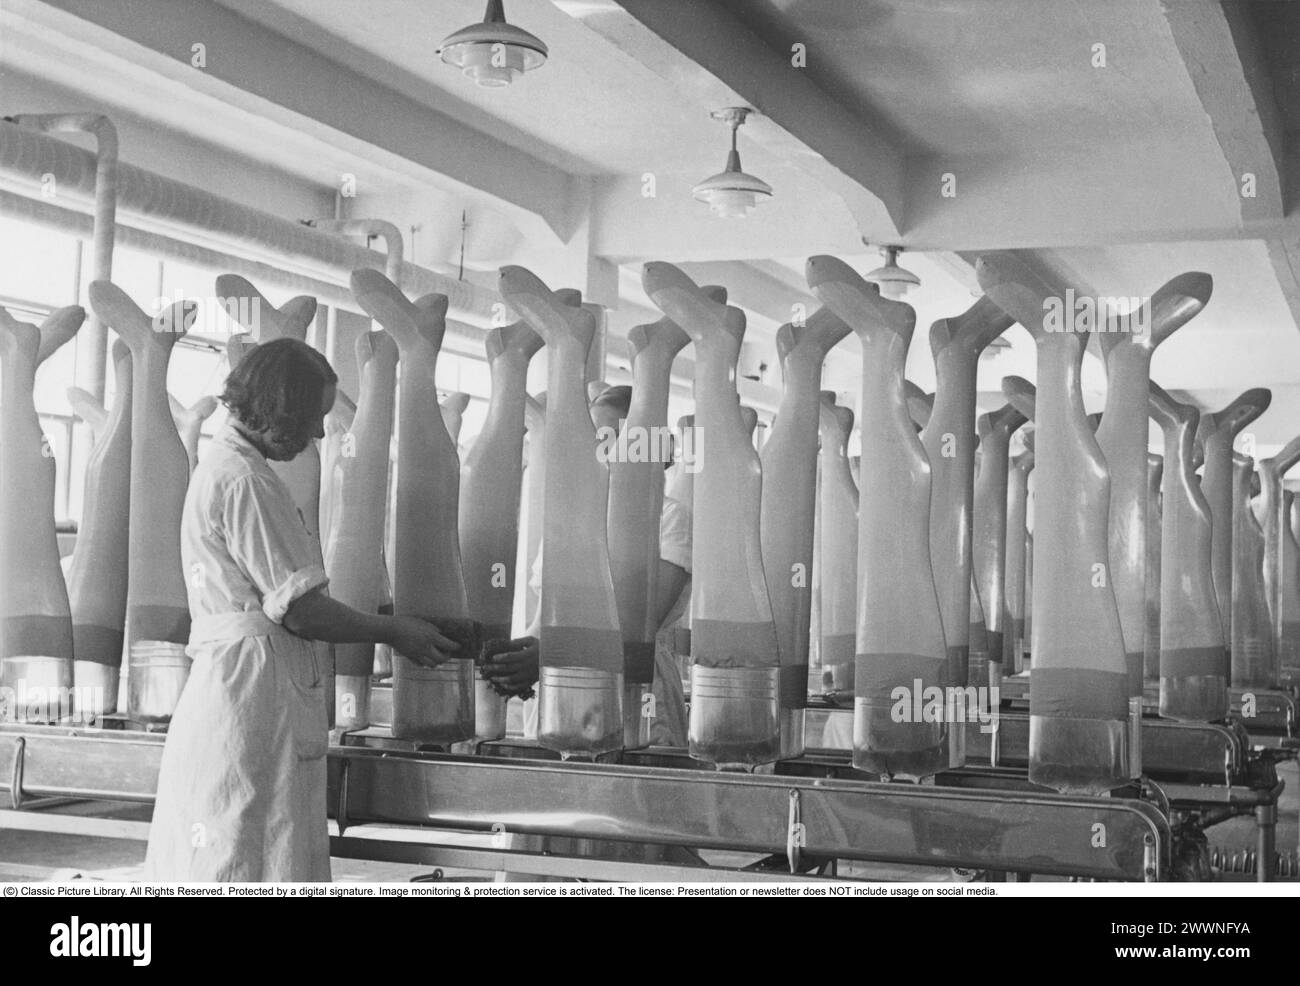 Aktiebolaget Malmö usine de stockage 1942. La société a été fondée en 1926 par le grossiste Kurt Levin. L’entreprise a rapidement grandi et l’usine a été la première en Suède à produire des chaussettes en soie naturelle. Leurs marques telles que Nivella et Vogue étaient des produits bien connus pendant l'entre-deux-guerres des années 1930 Lorsque le nylon a été introduit en 1939, cependant, il a fallu du temps pour que le produit se répande en raison de la seconde Guerre mondiale en cours. La propre production de bas en nylon de l'usine et plus tard de pantalons en nylon a décollé au début des années 1950 et la société a développé le bas en nylon et acquis de nouvelles machines pour th Banque D'Images